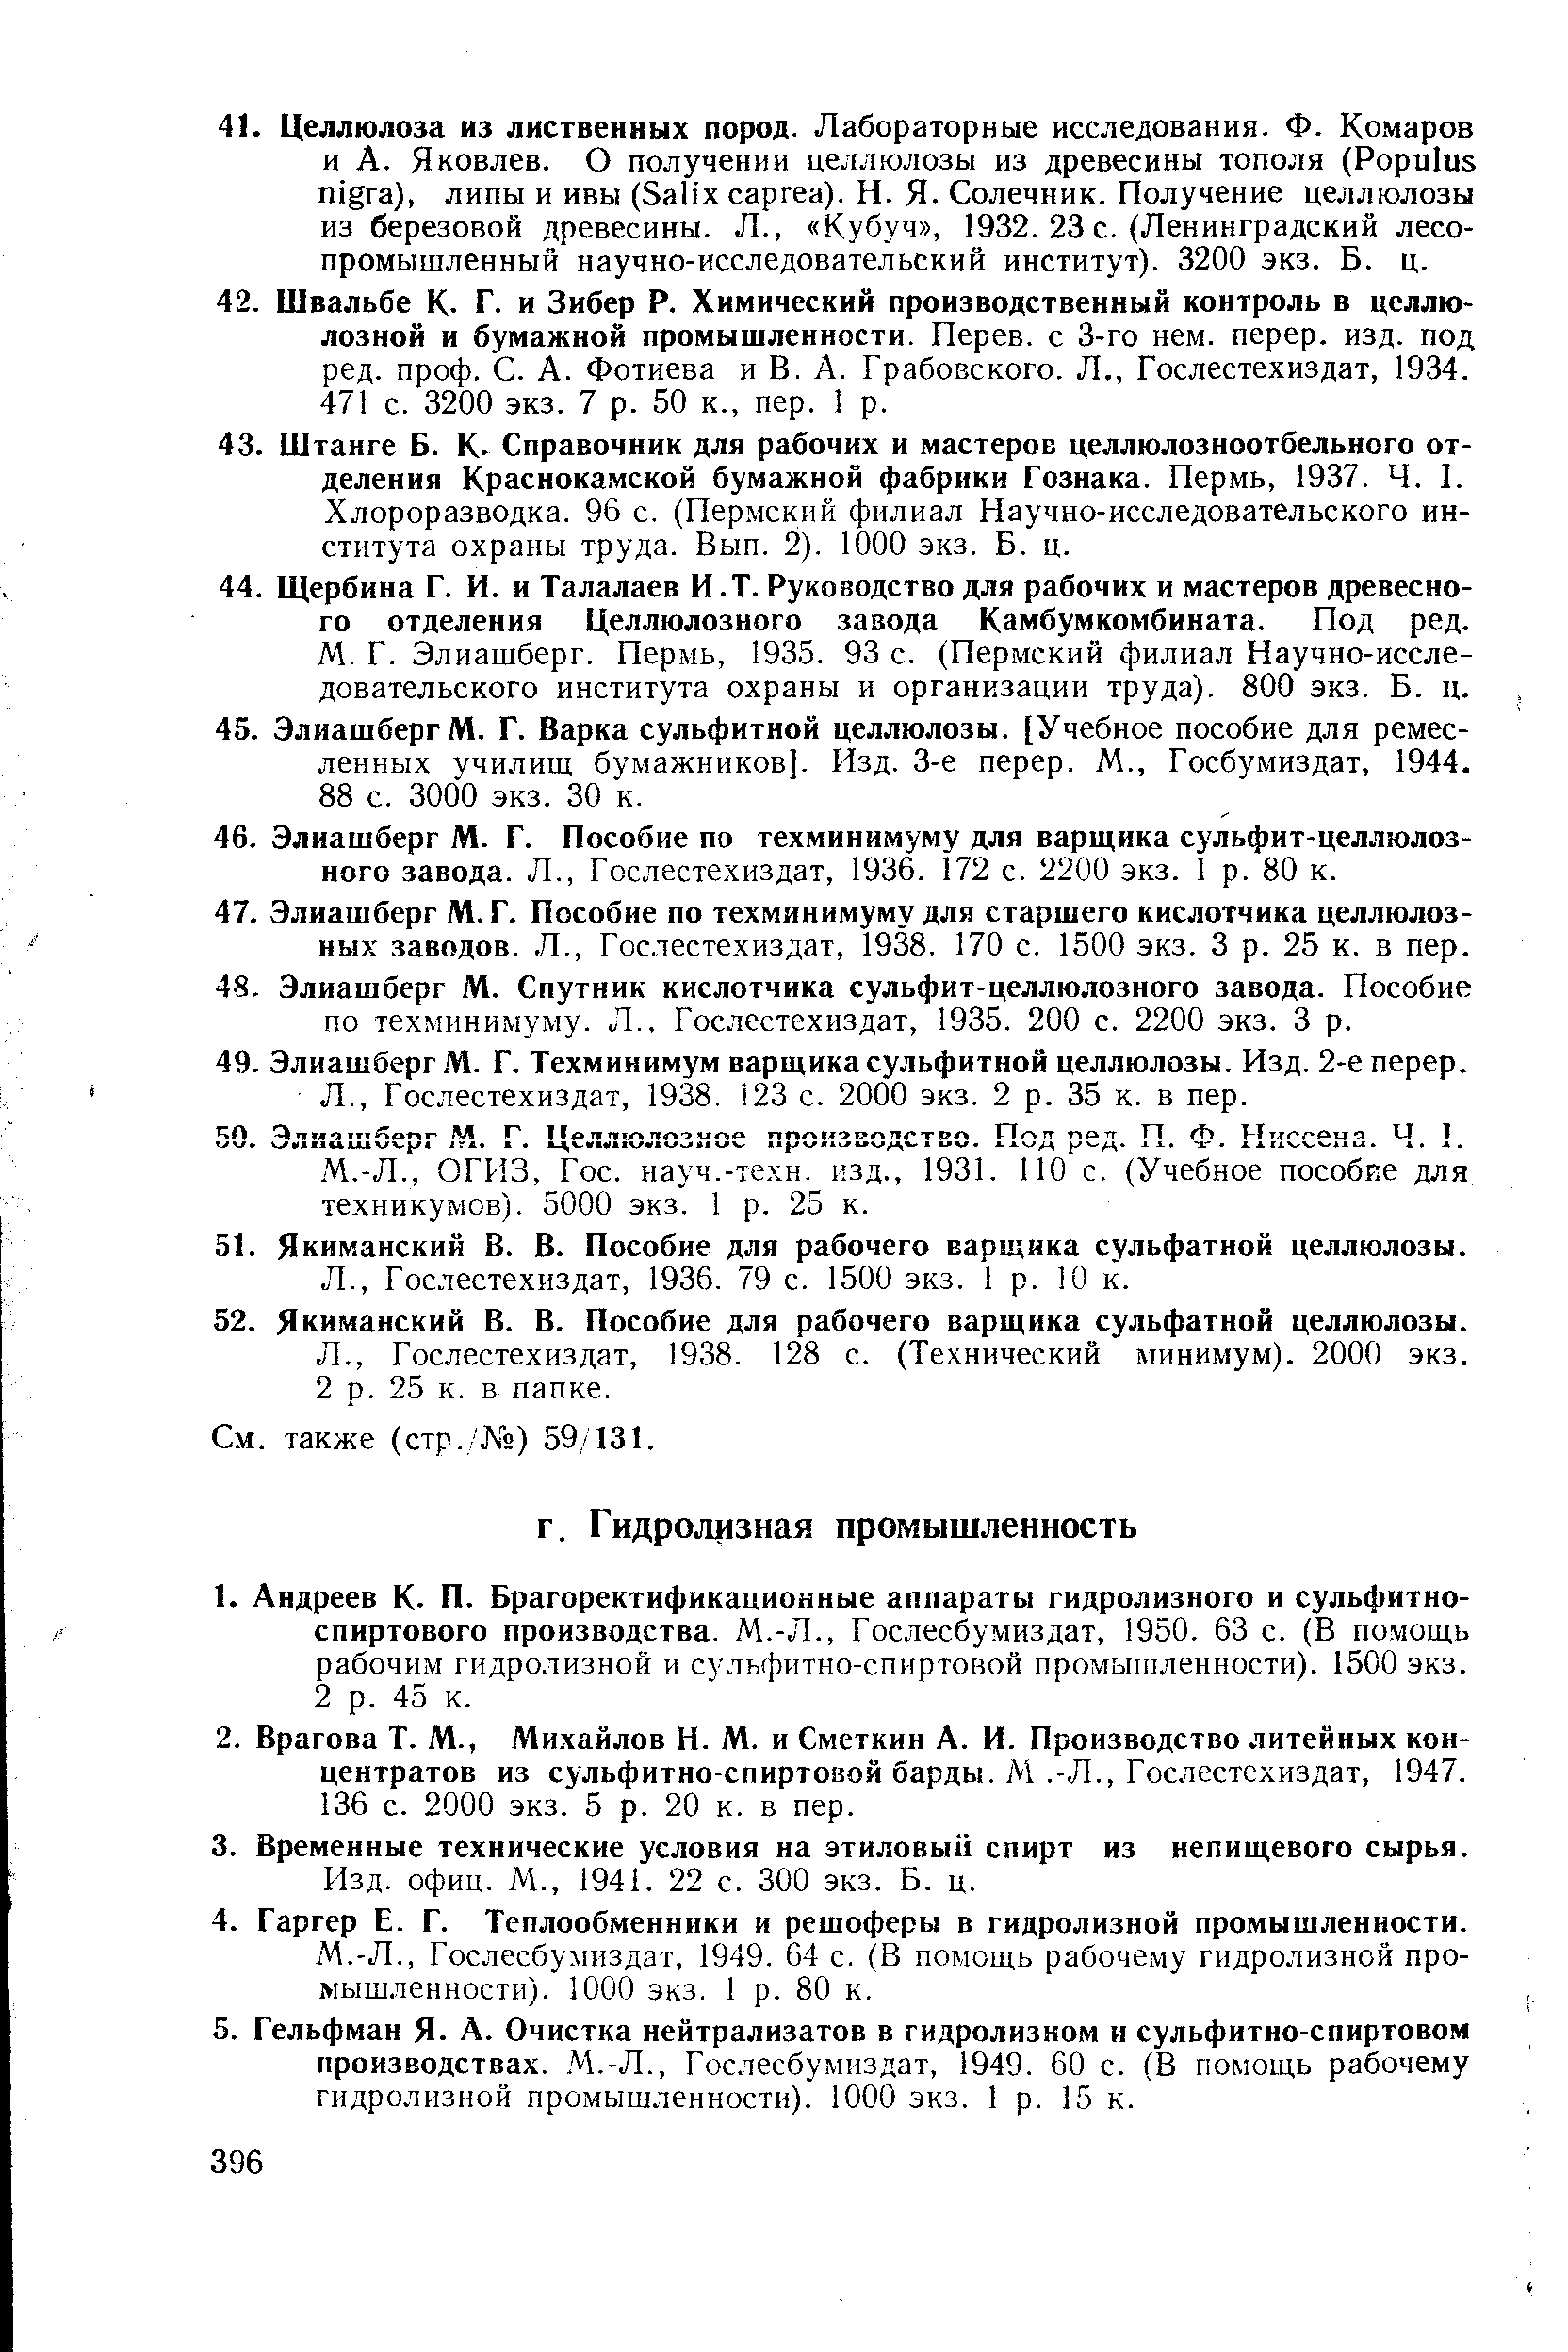 Гослесбумиздат, 1949. 64 с. (В помощь рабочему гидролизной промышленности). 1000 экз. 1 р. 80 к.